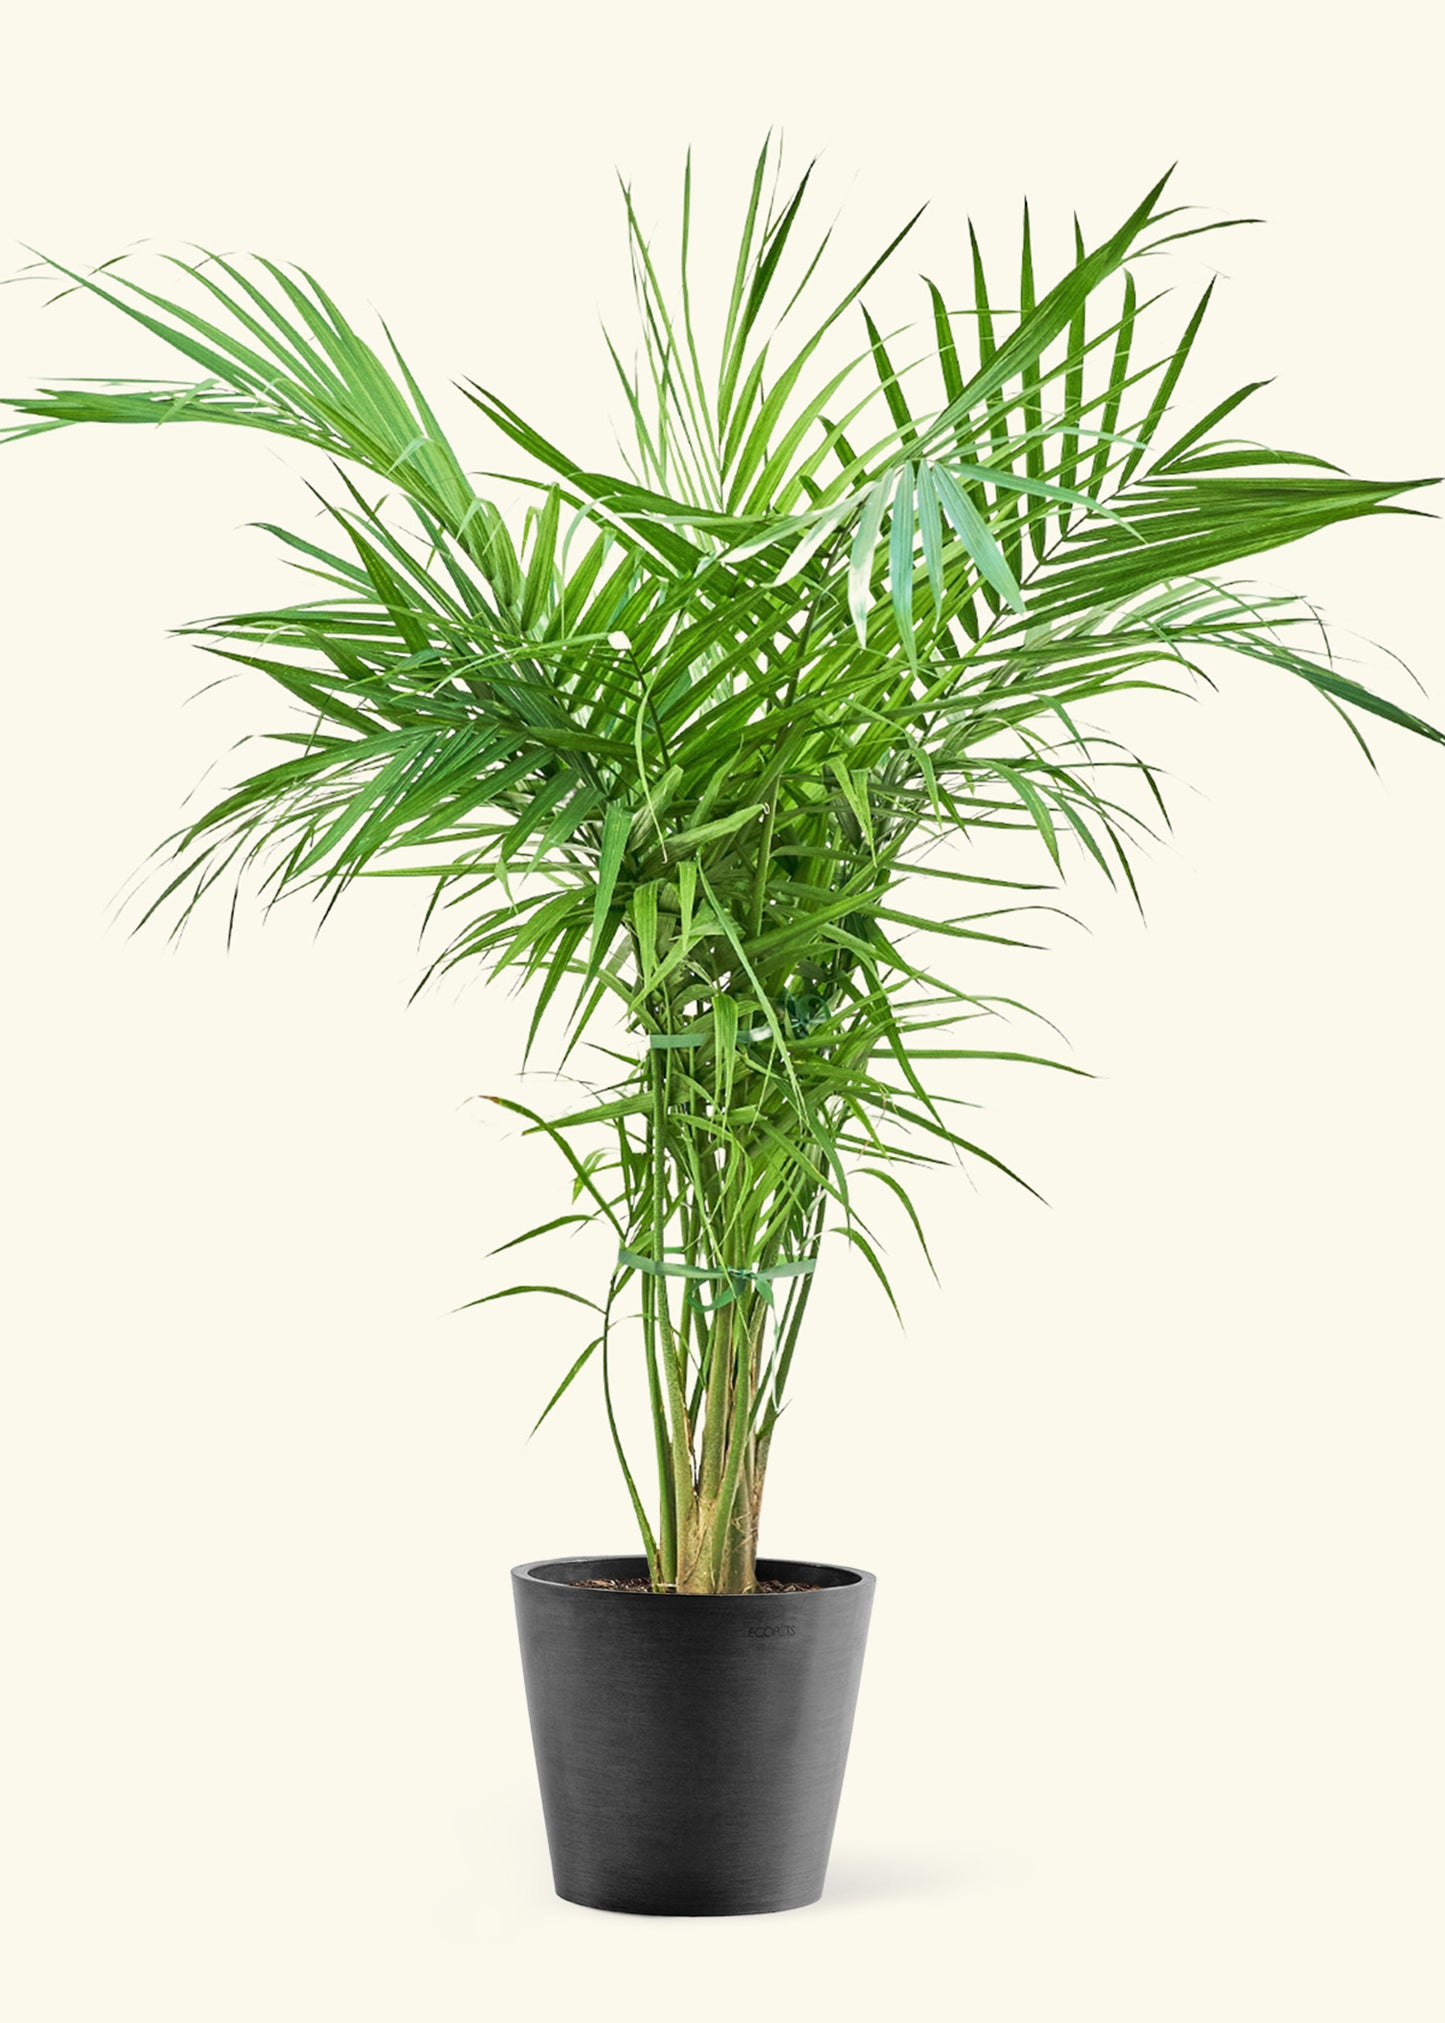 Extra Large Majesty Palm  in a black pot.